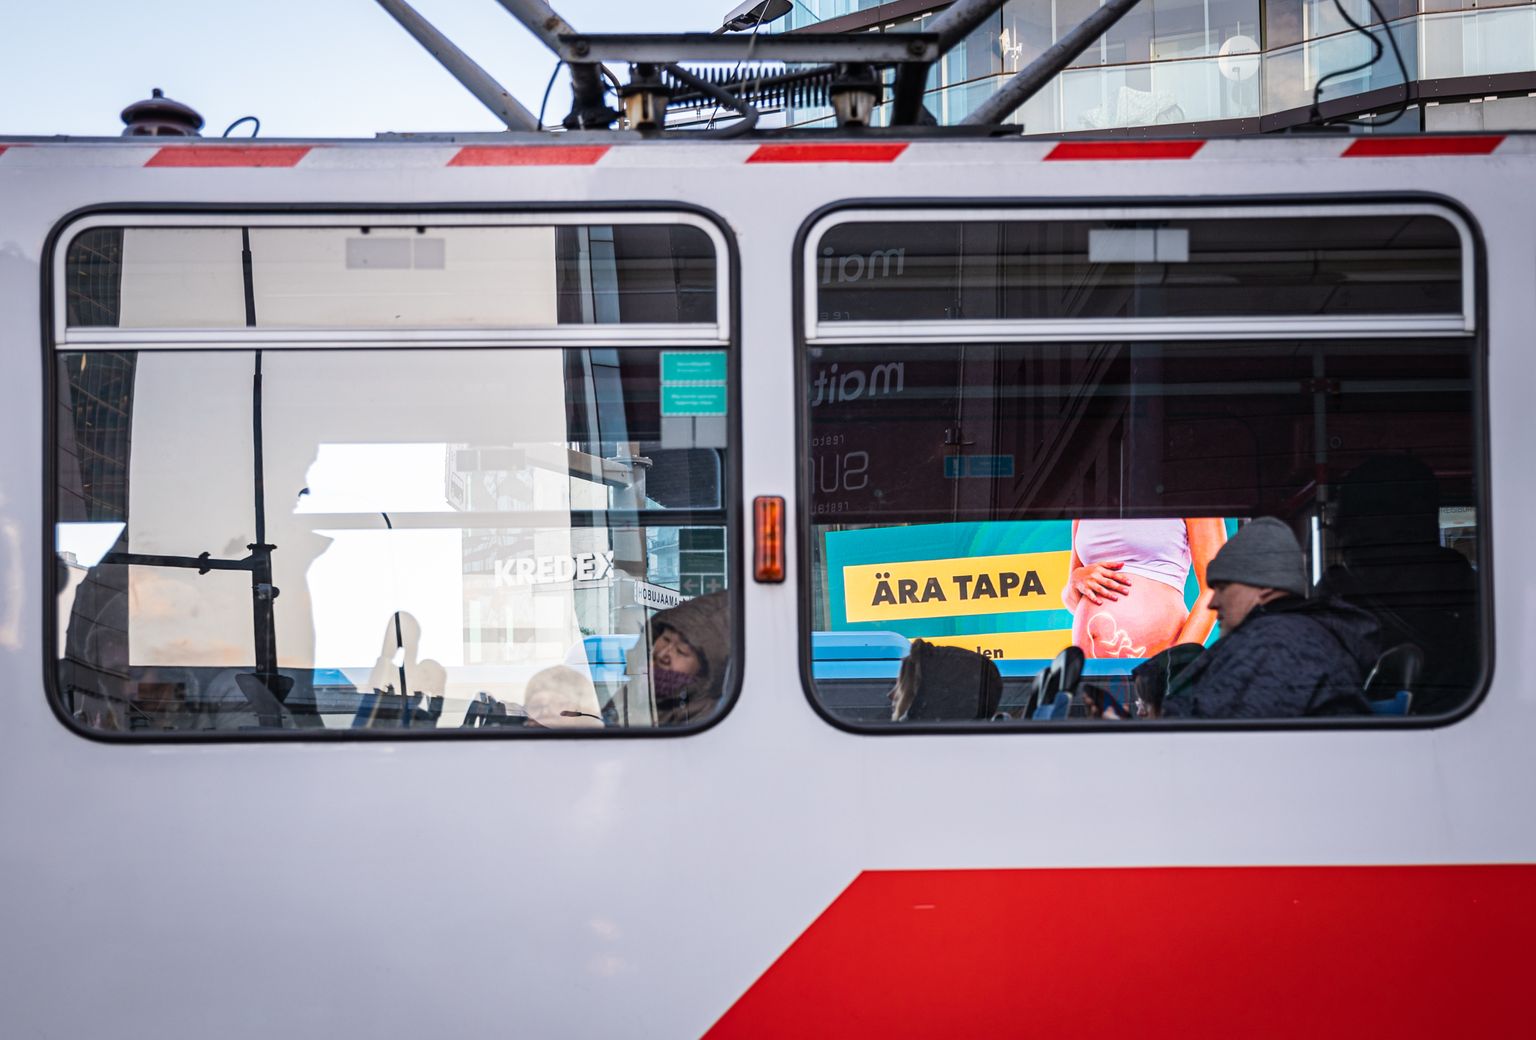 Objektiiv.ee abordivastane reklaamikampaania Hobujaamas läbi trammiakna. Ühtlasi kutsub MTÜ Elu Marss inimesi Objektiivi finantsiliselt toetama.